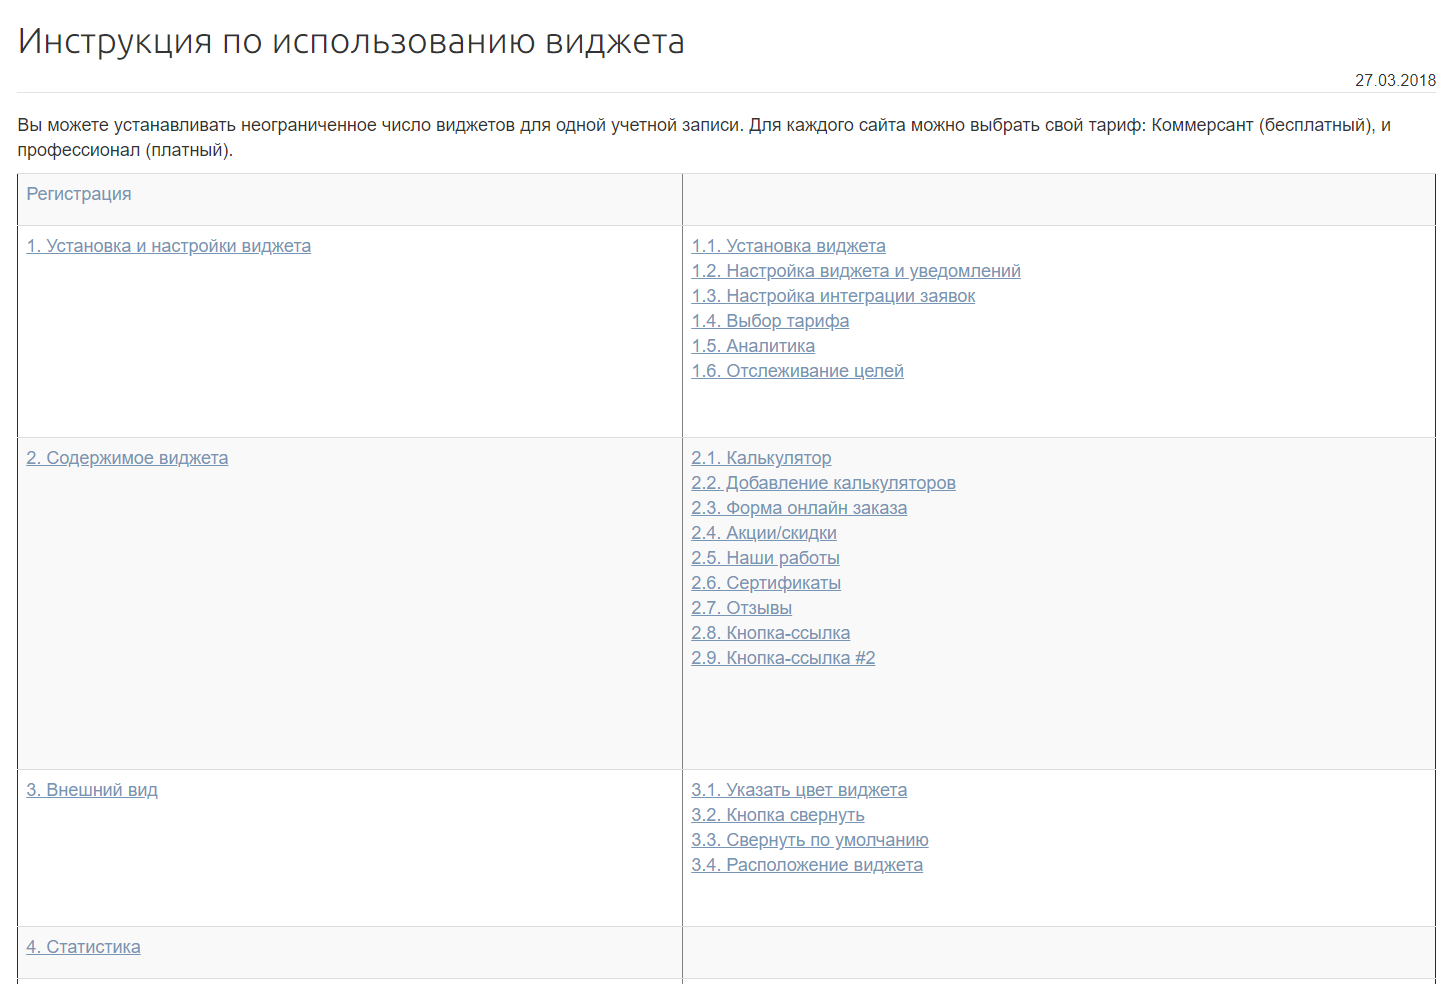 Виджеты для сайта — Meedget.ru, техподдержка и документация